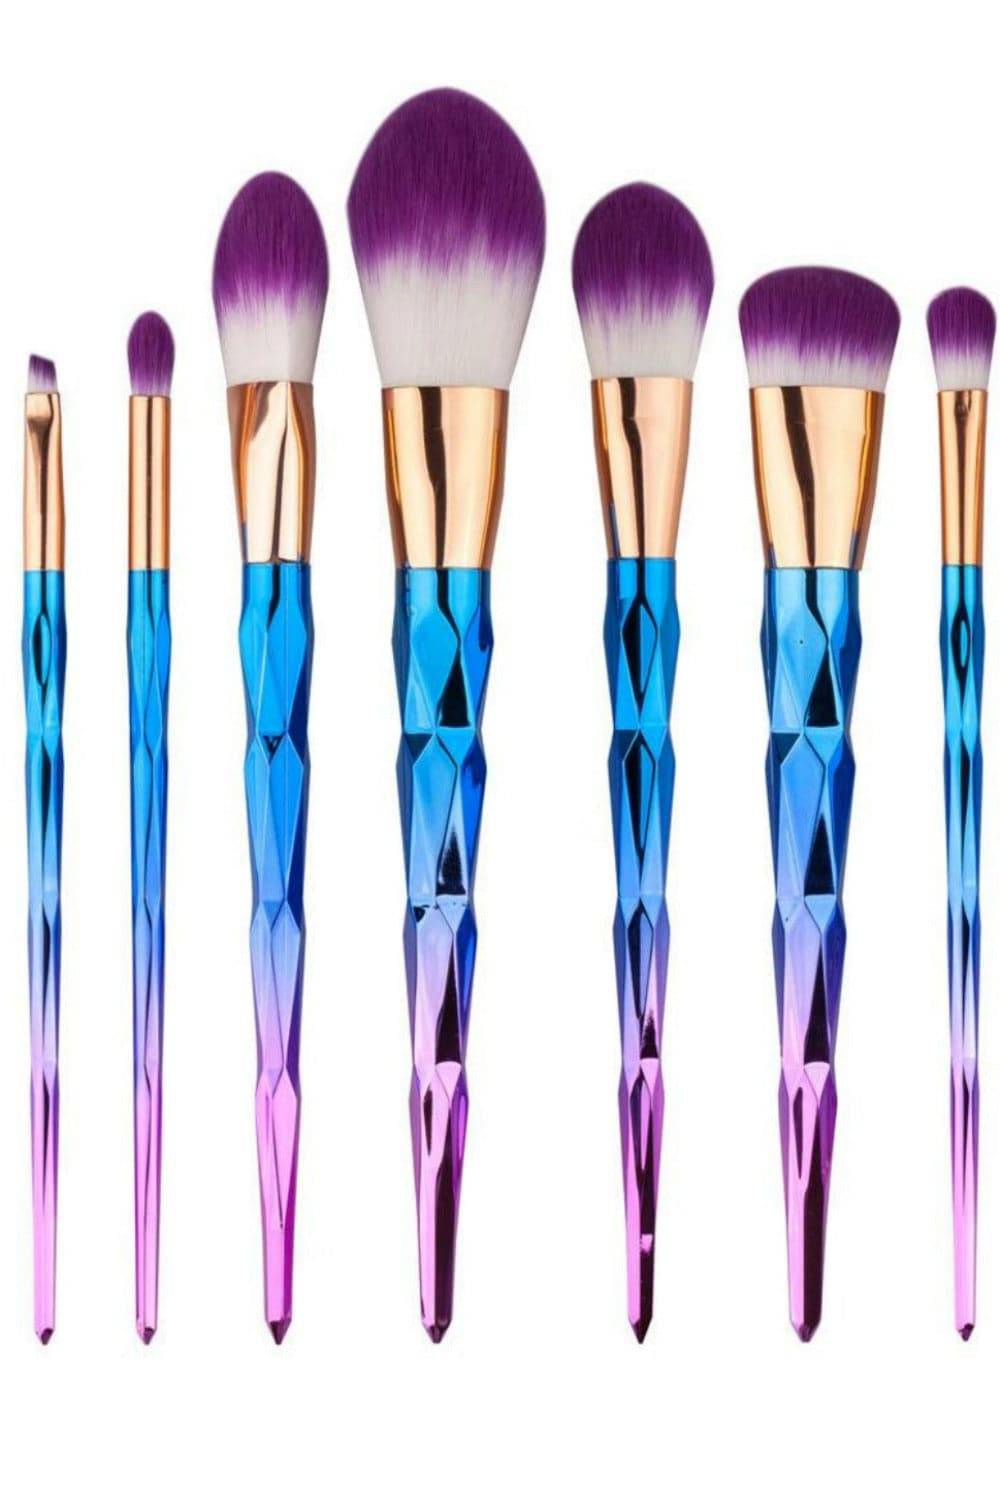 Rainbow Unicorn Pattern Makeup Brush Set - TGC Boutique - unicorn makeup brushes